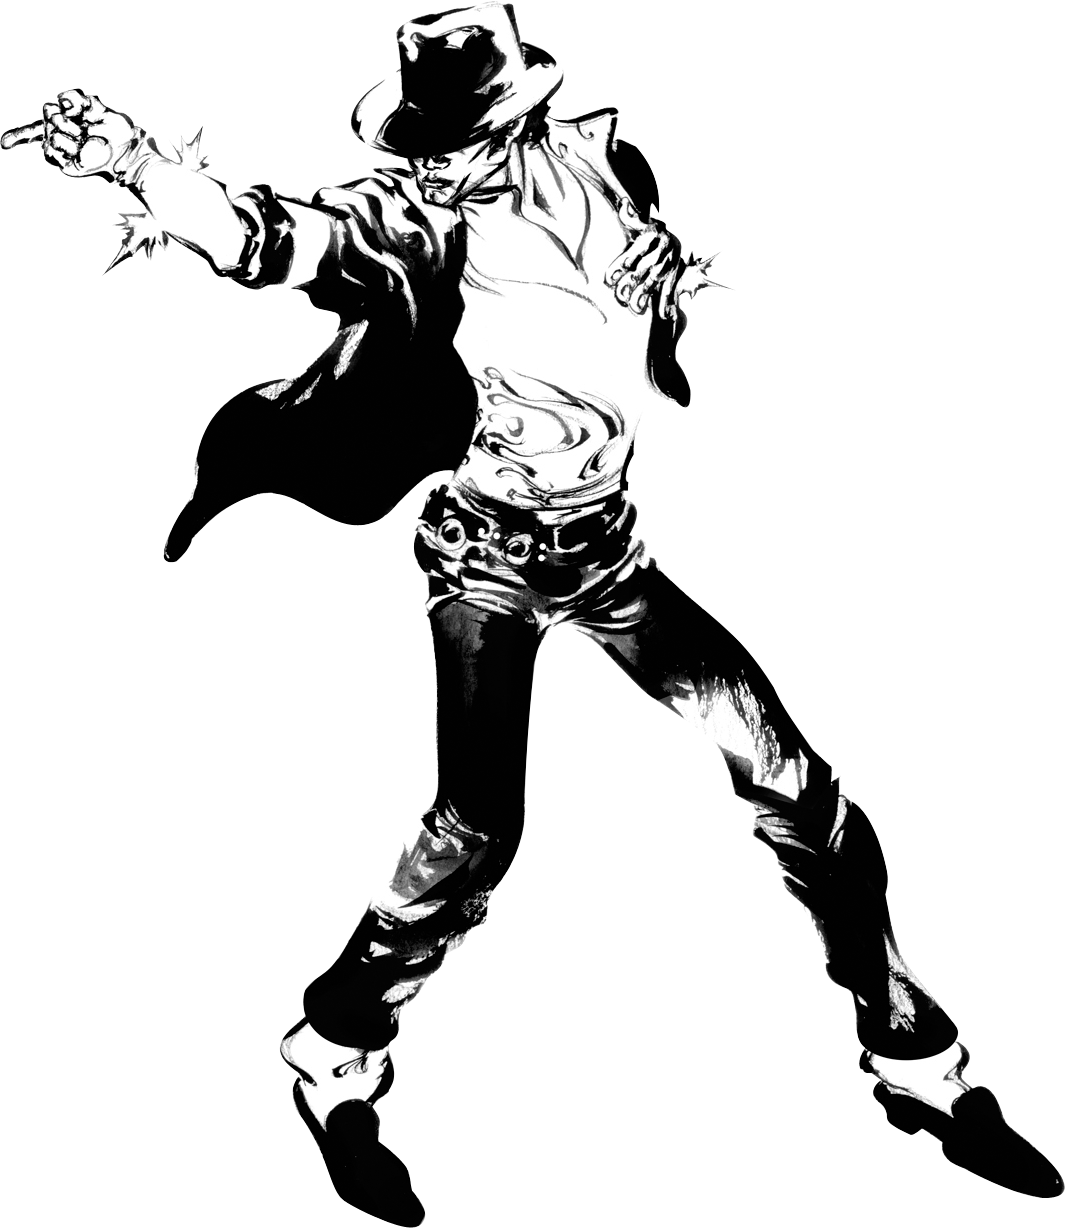 Iconic Michael Jackson Dance Pose PNG image